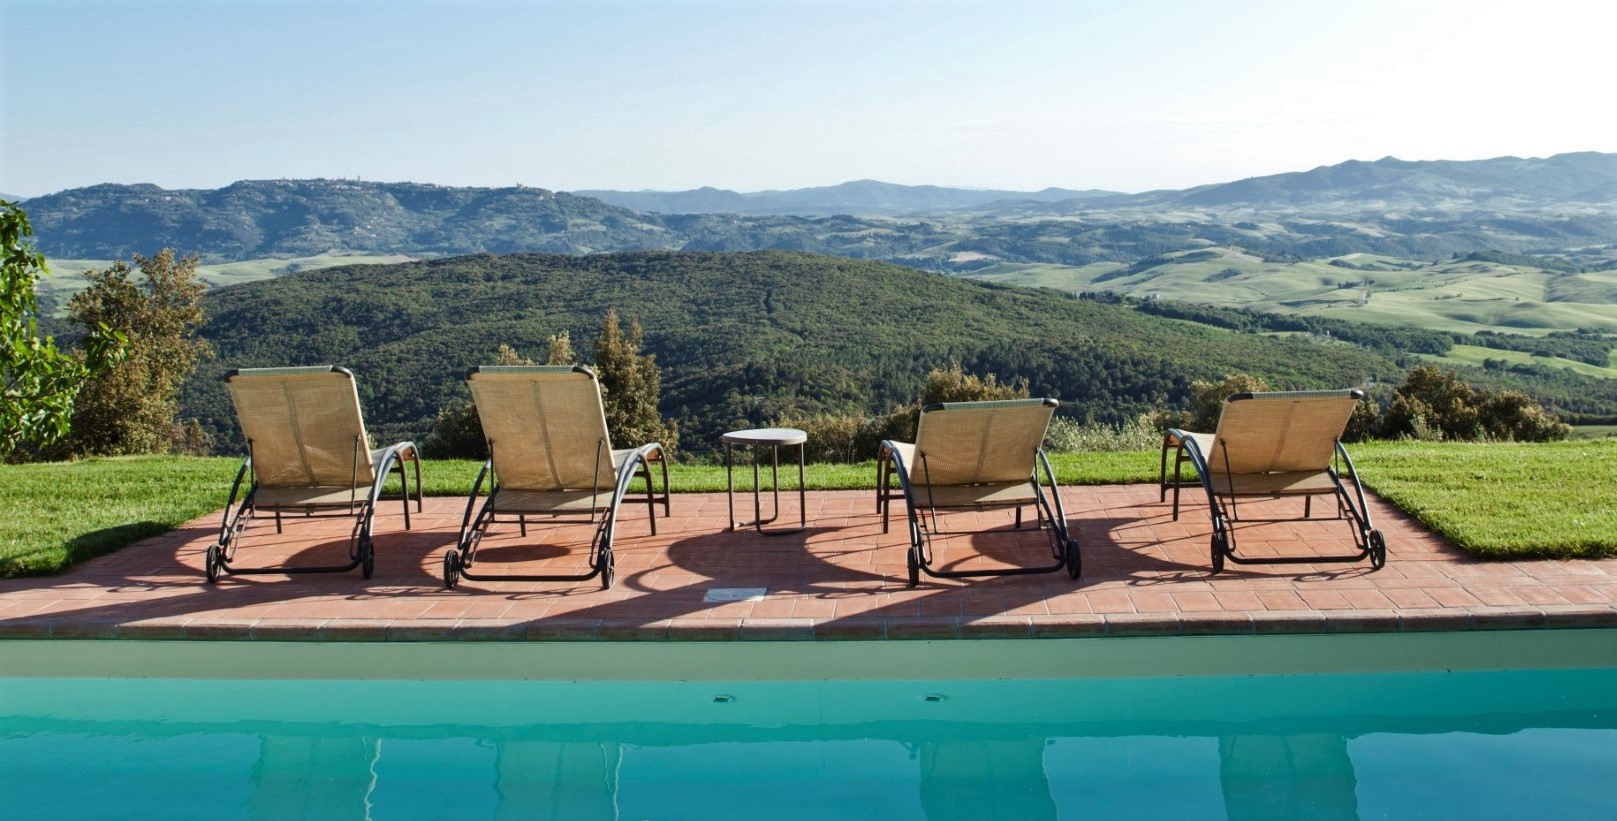 121_6f4231e_121_ceceaa2_Villa belvedere villa met prive zwembad Toscane Gambassi Terme 1 (2) kopie (Groot)